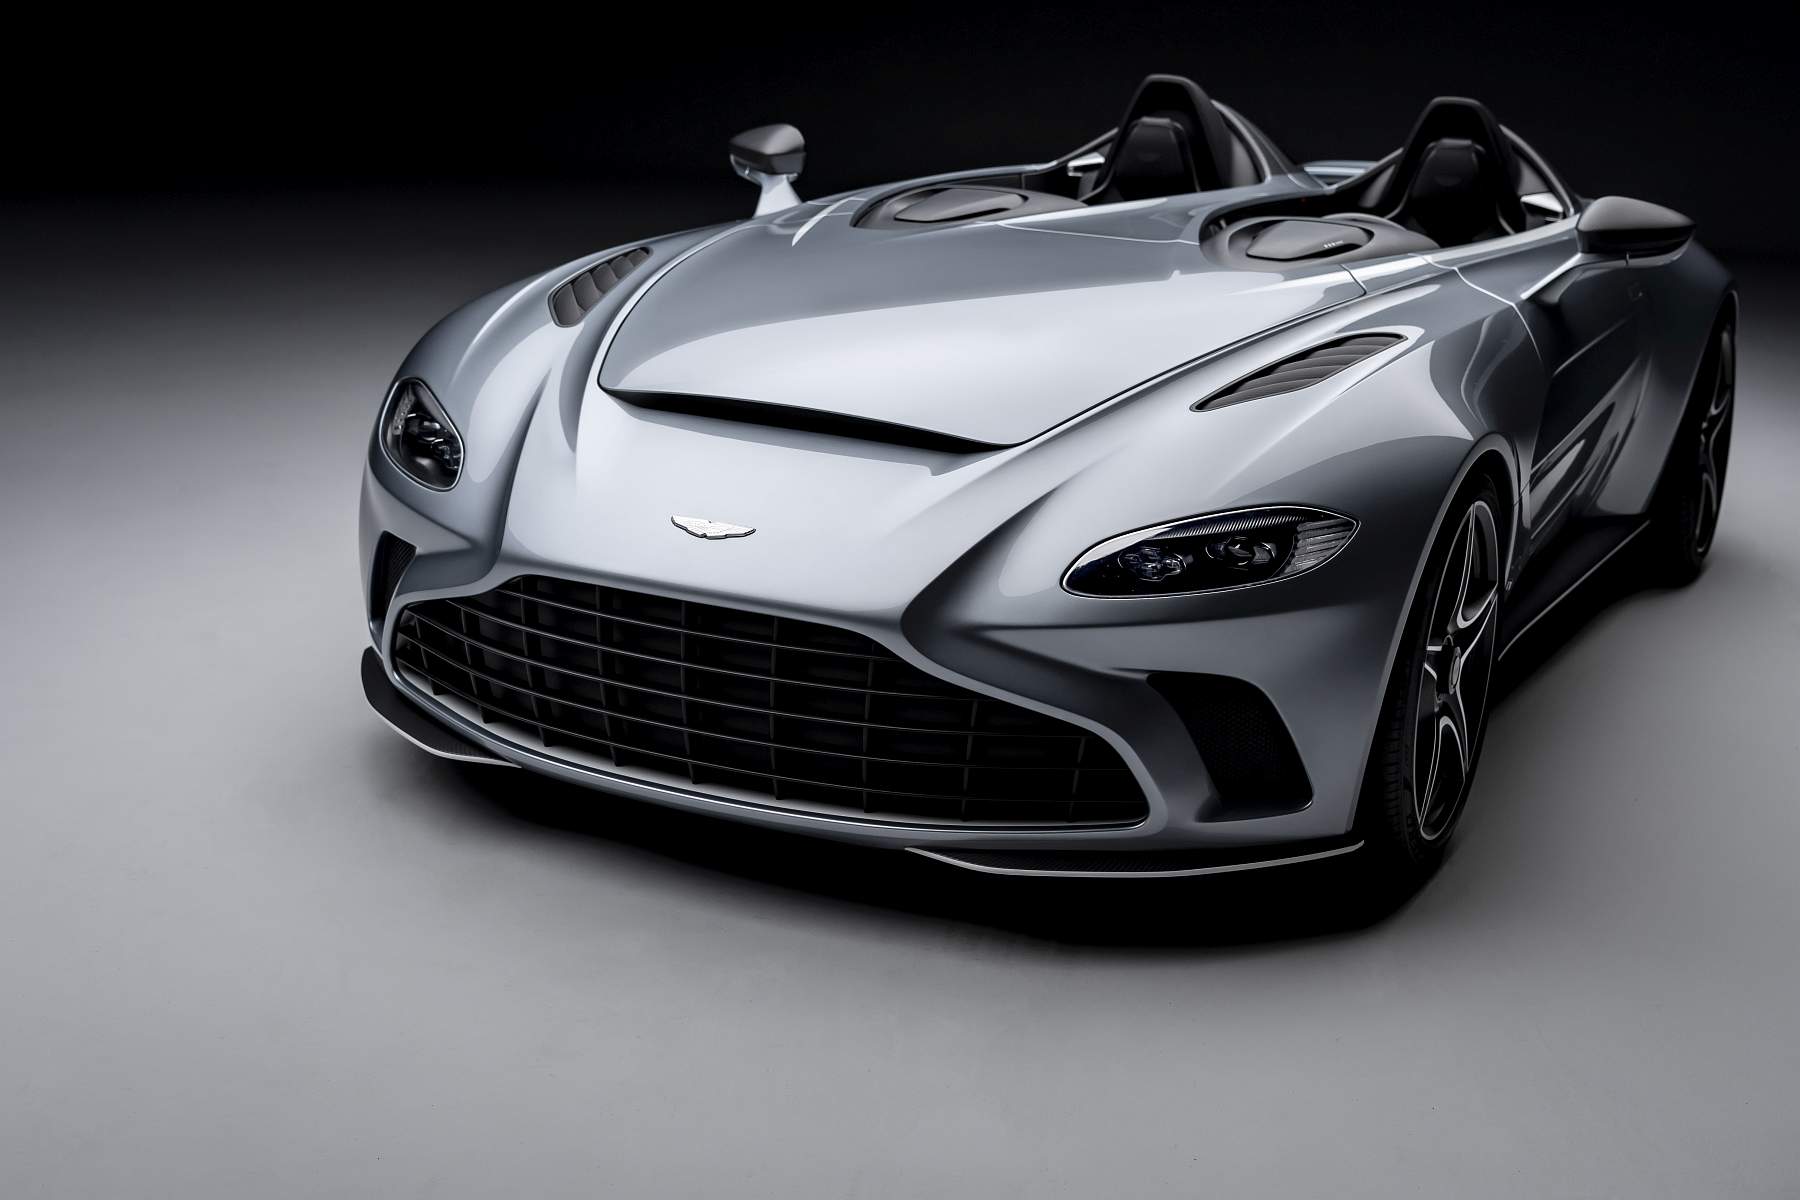 2021 Aston Martin V12 Speedster Review - Carshighlight.com